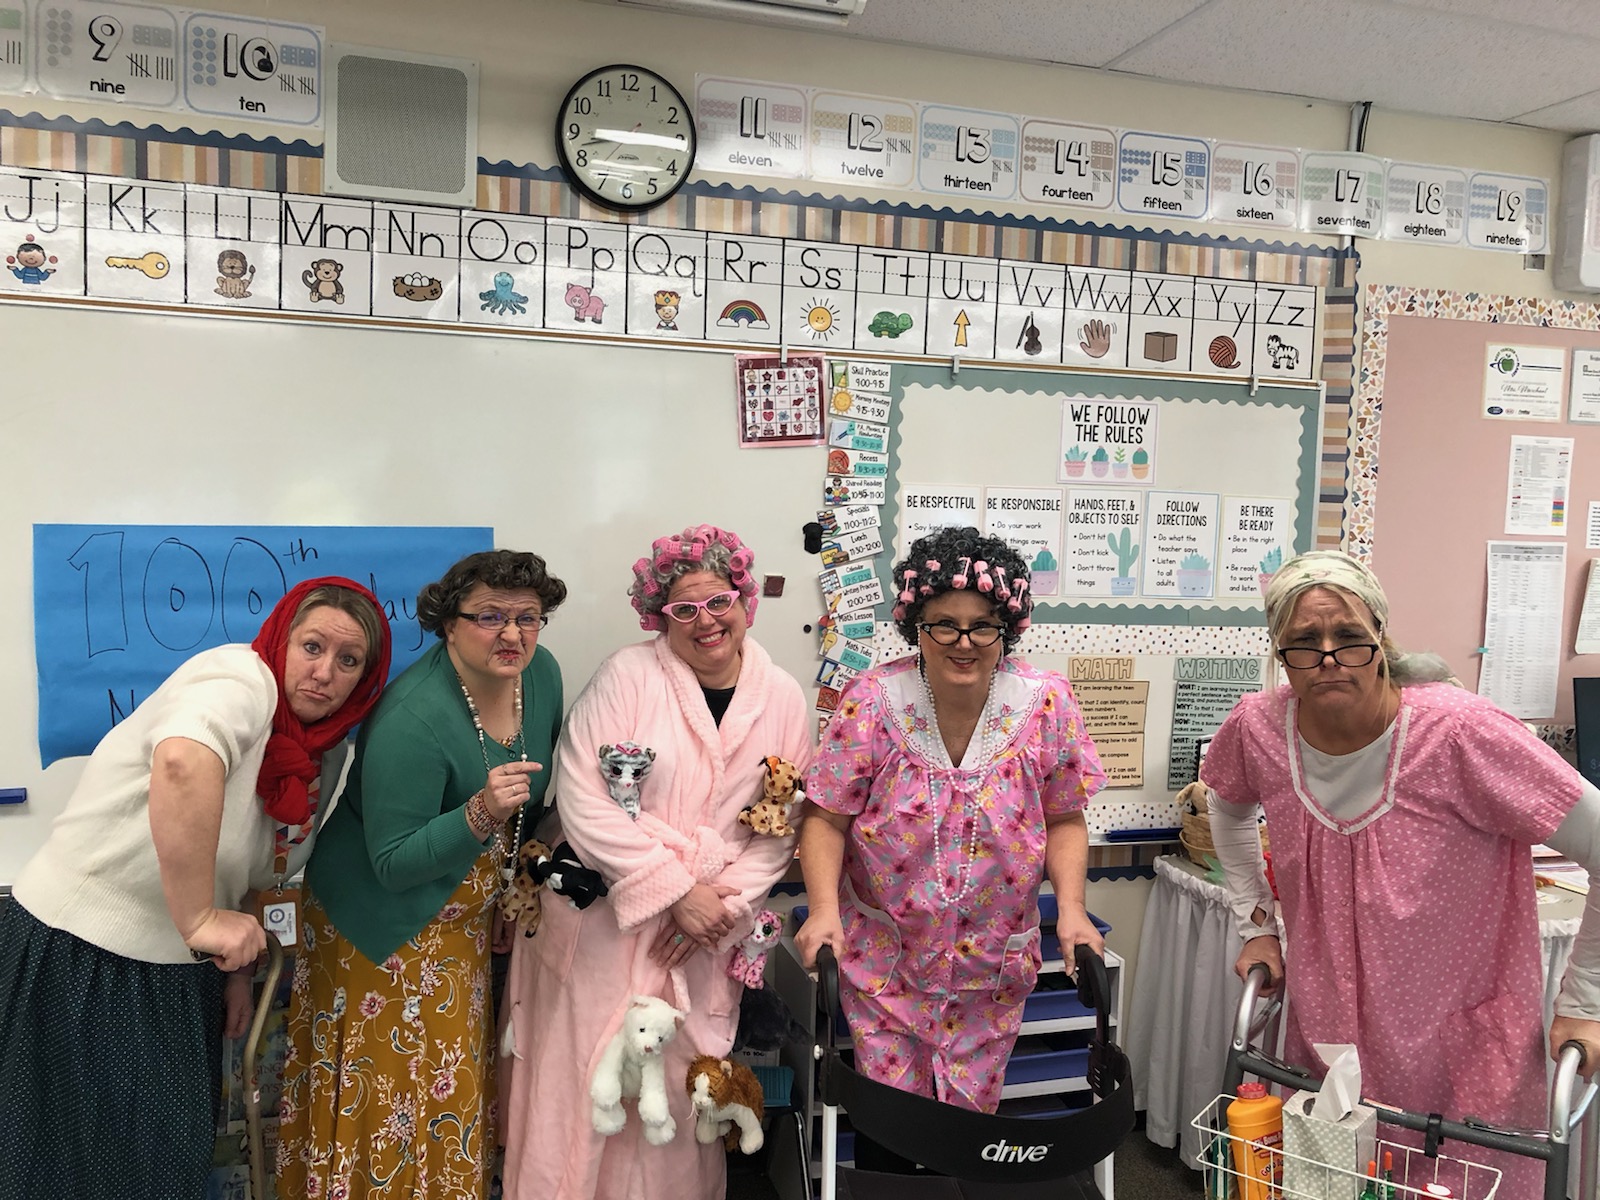 Teachers dressed up as old ladies.